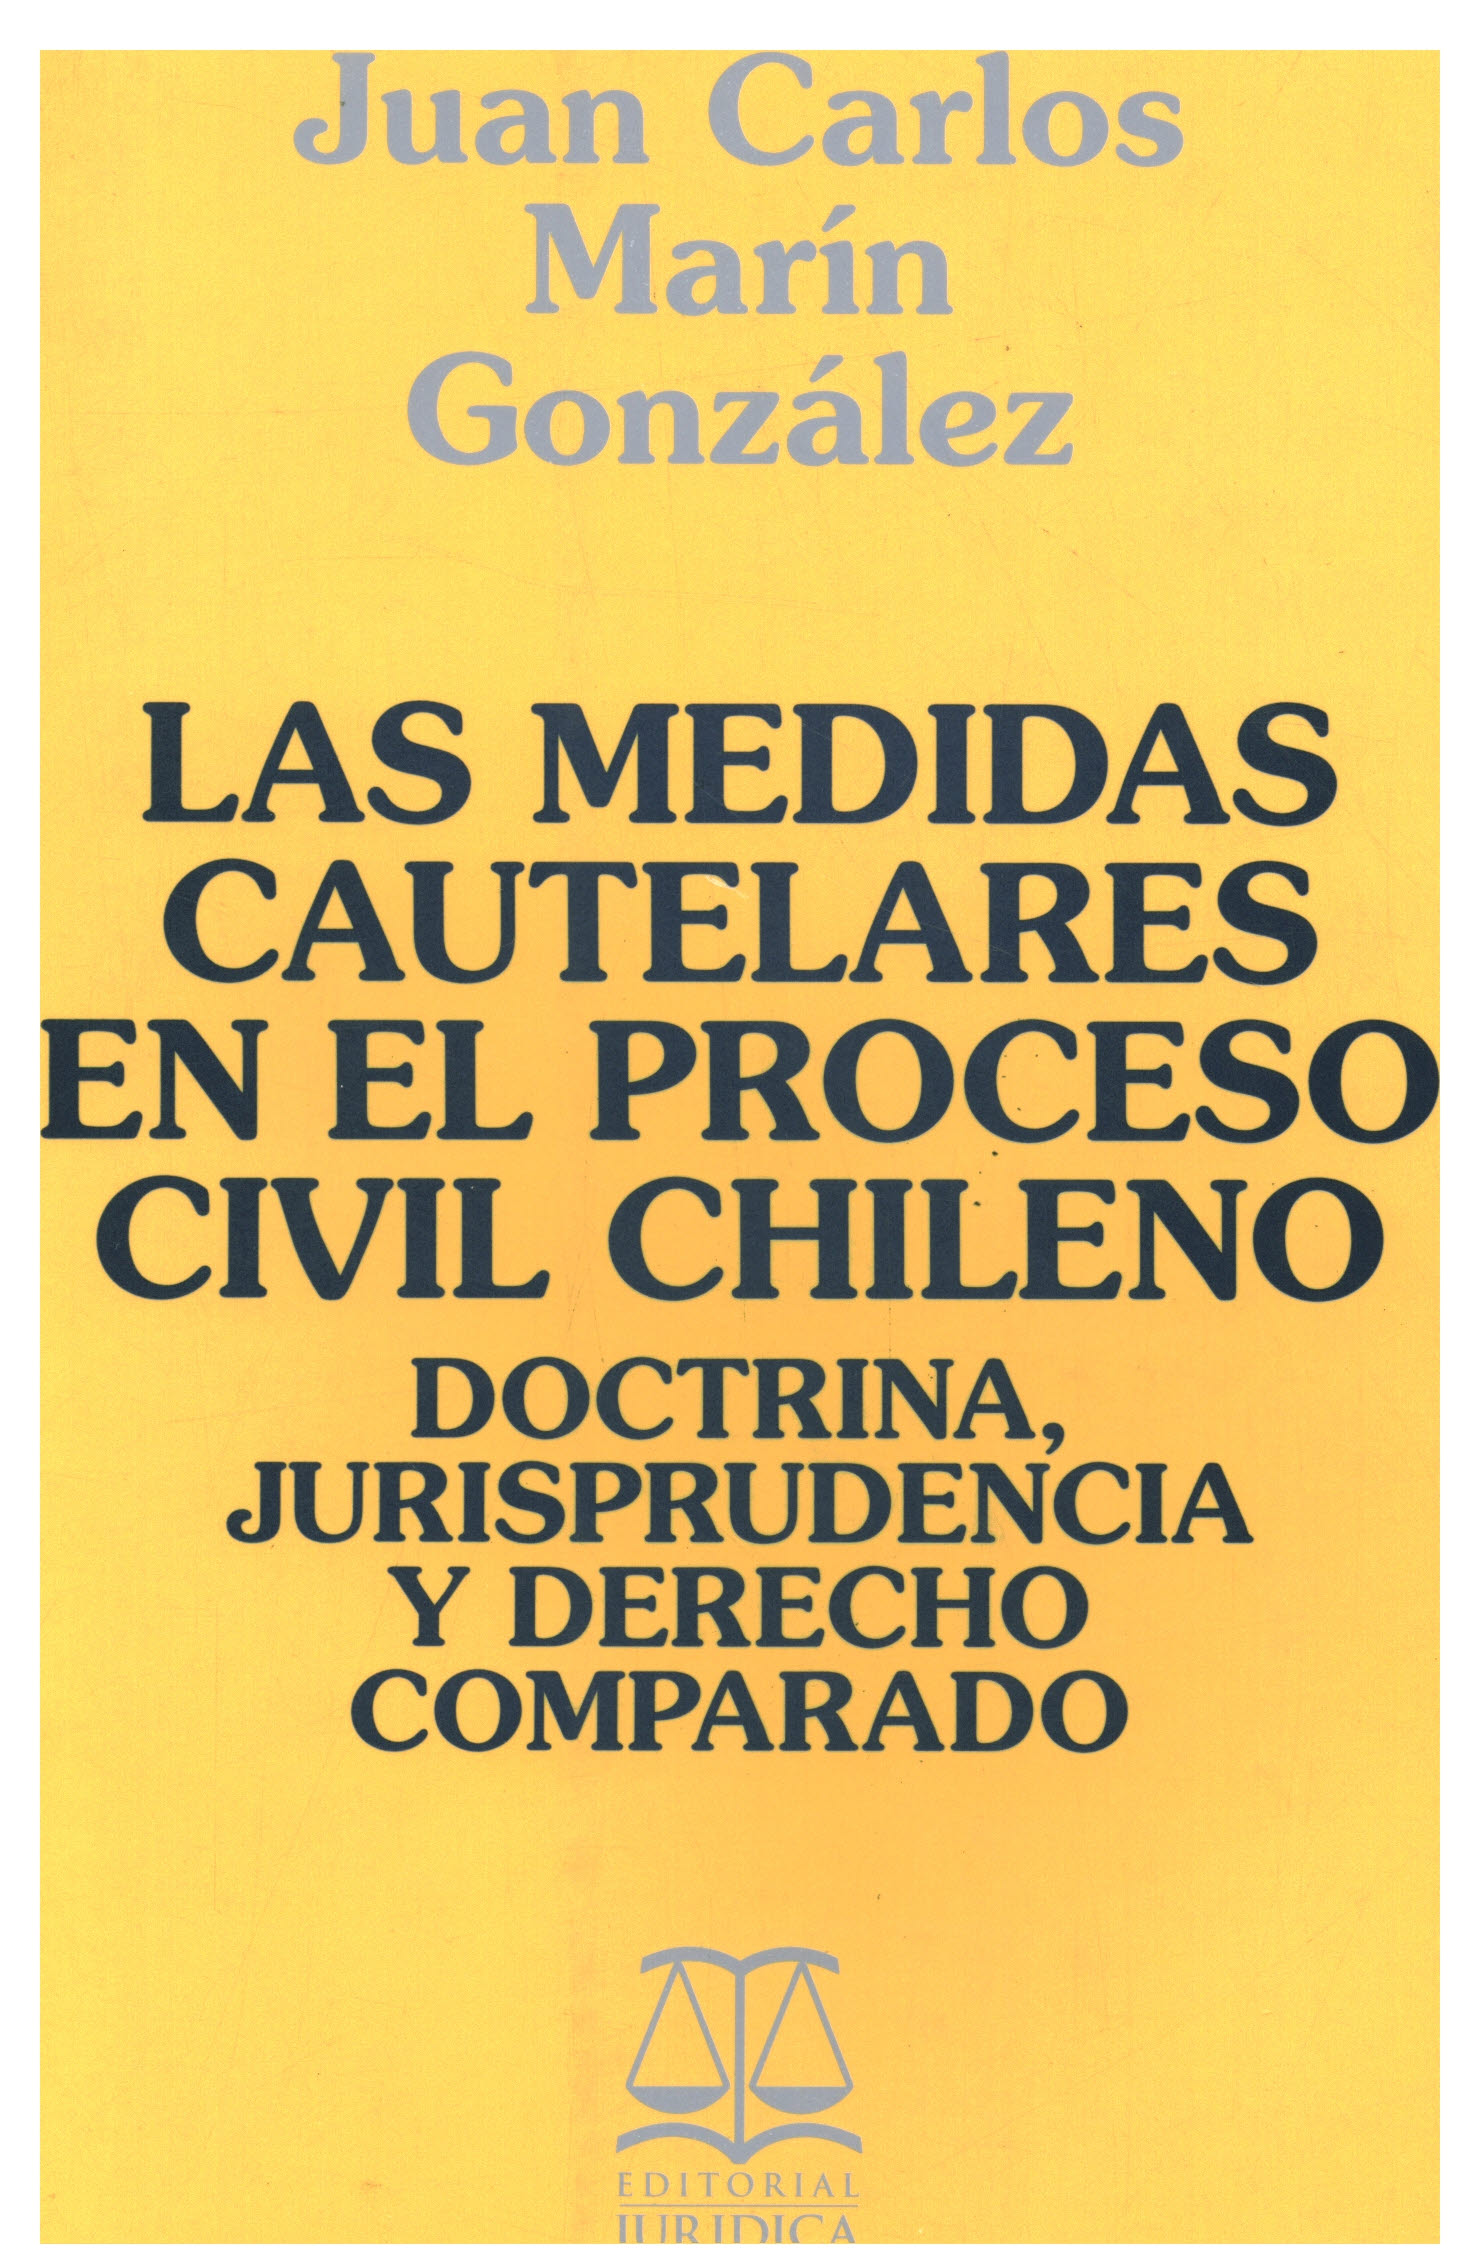 Las medidas cautelares en el proceso civil chileno. (Doctrina, jurisprudencia y derecho comparado)